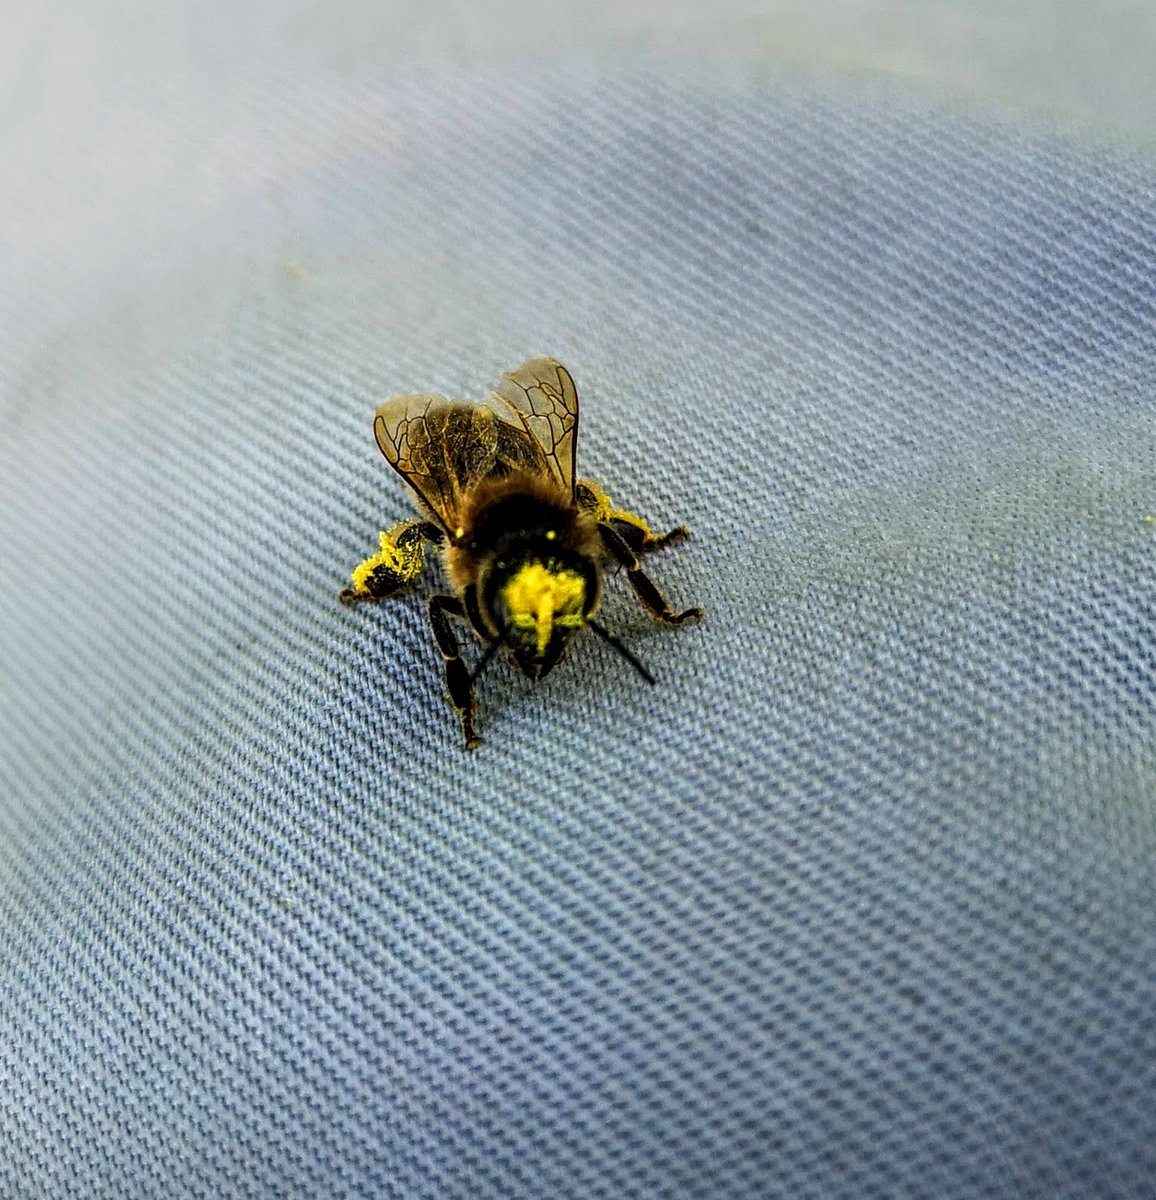 Honeybee covered in pollen.
#NorfolkHoneyCo
#StewartSpinks
#BeekeepingForAll
#Beekeeping
#Honeybees
#BeeFarmer